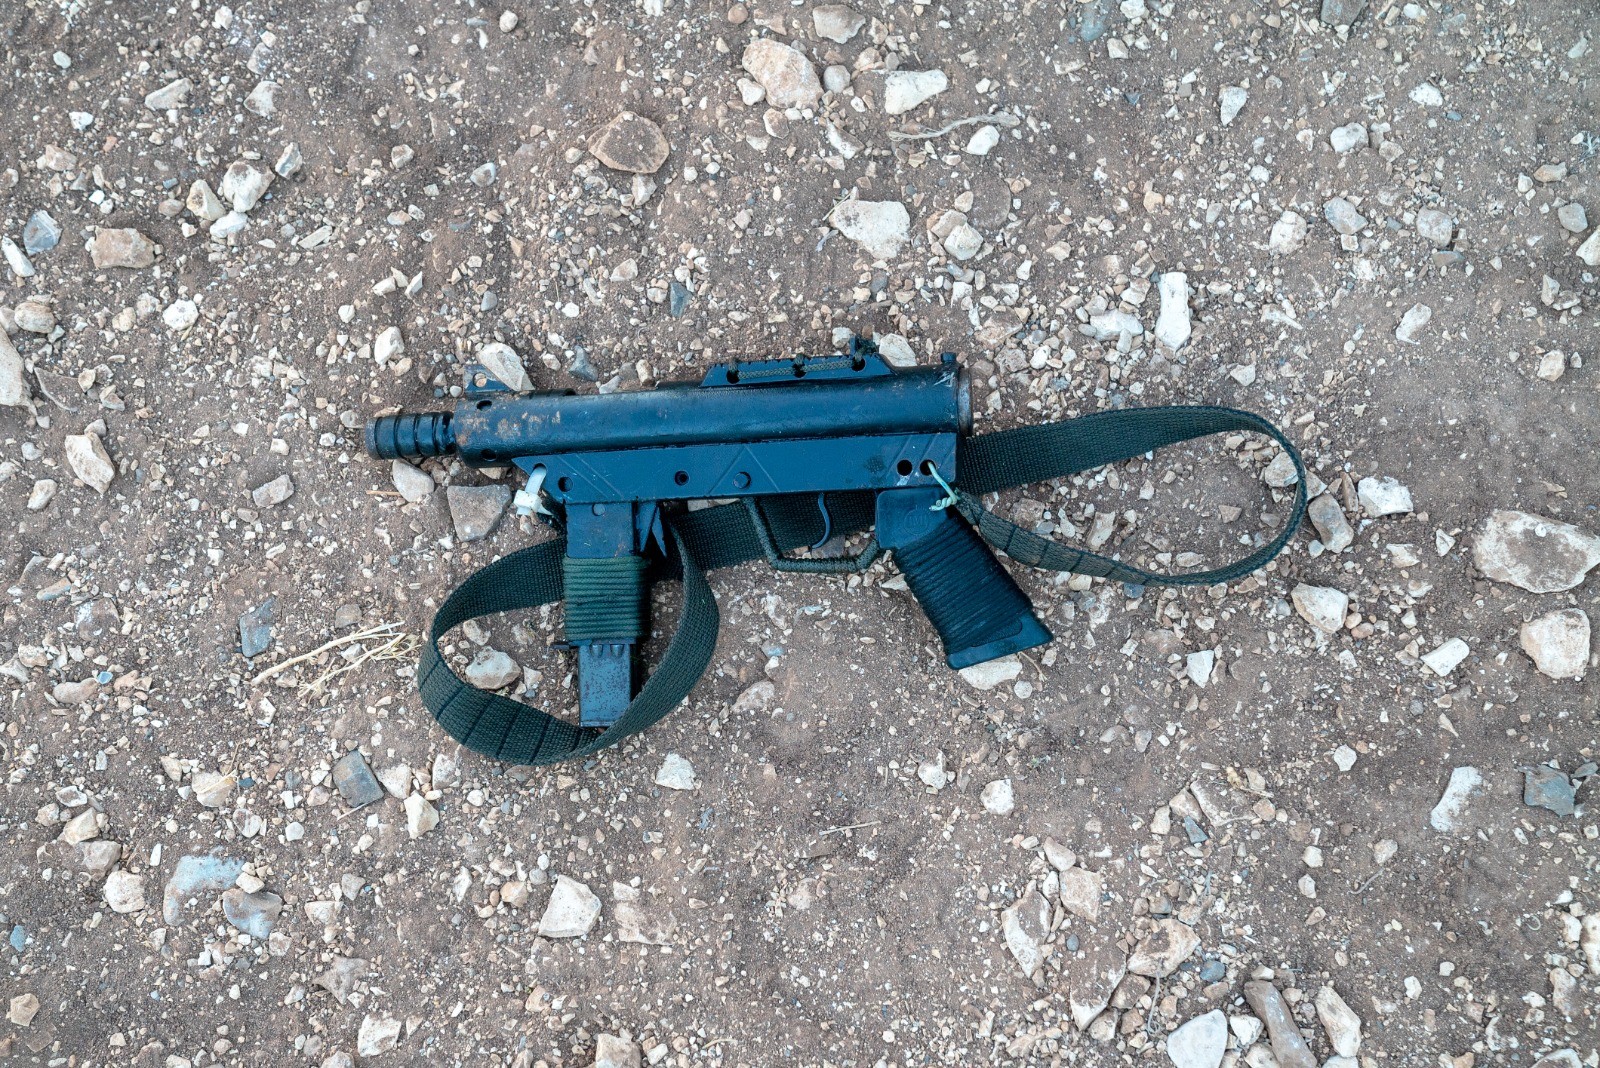 مواقع عبرية تنشر صور للأسلحة المستخدمة في نبادل اطلاق النار قرب الجلمة  2.jpg